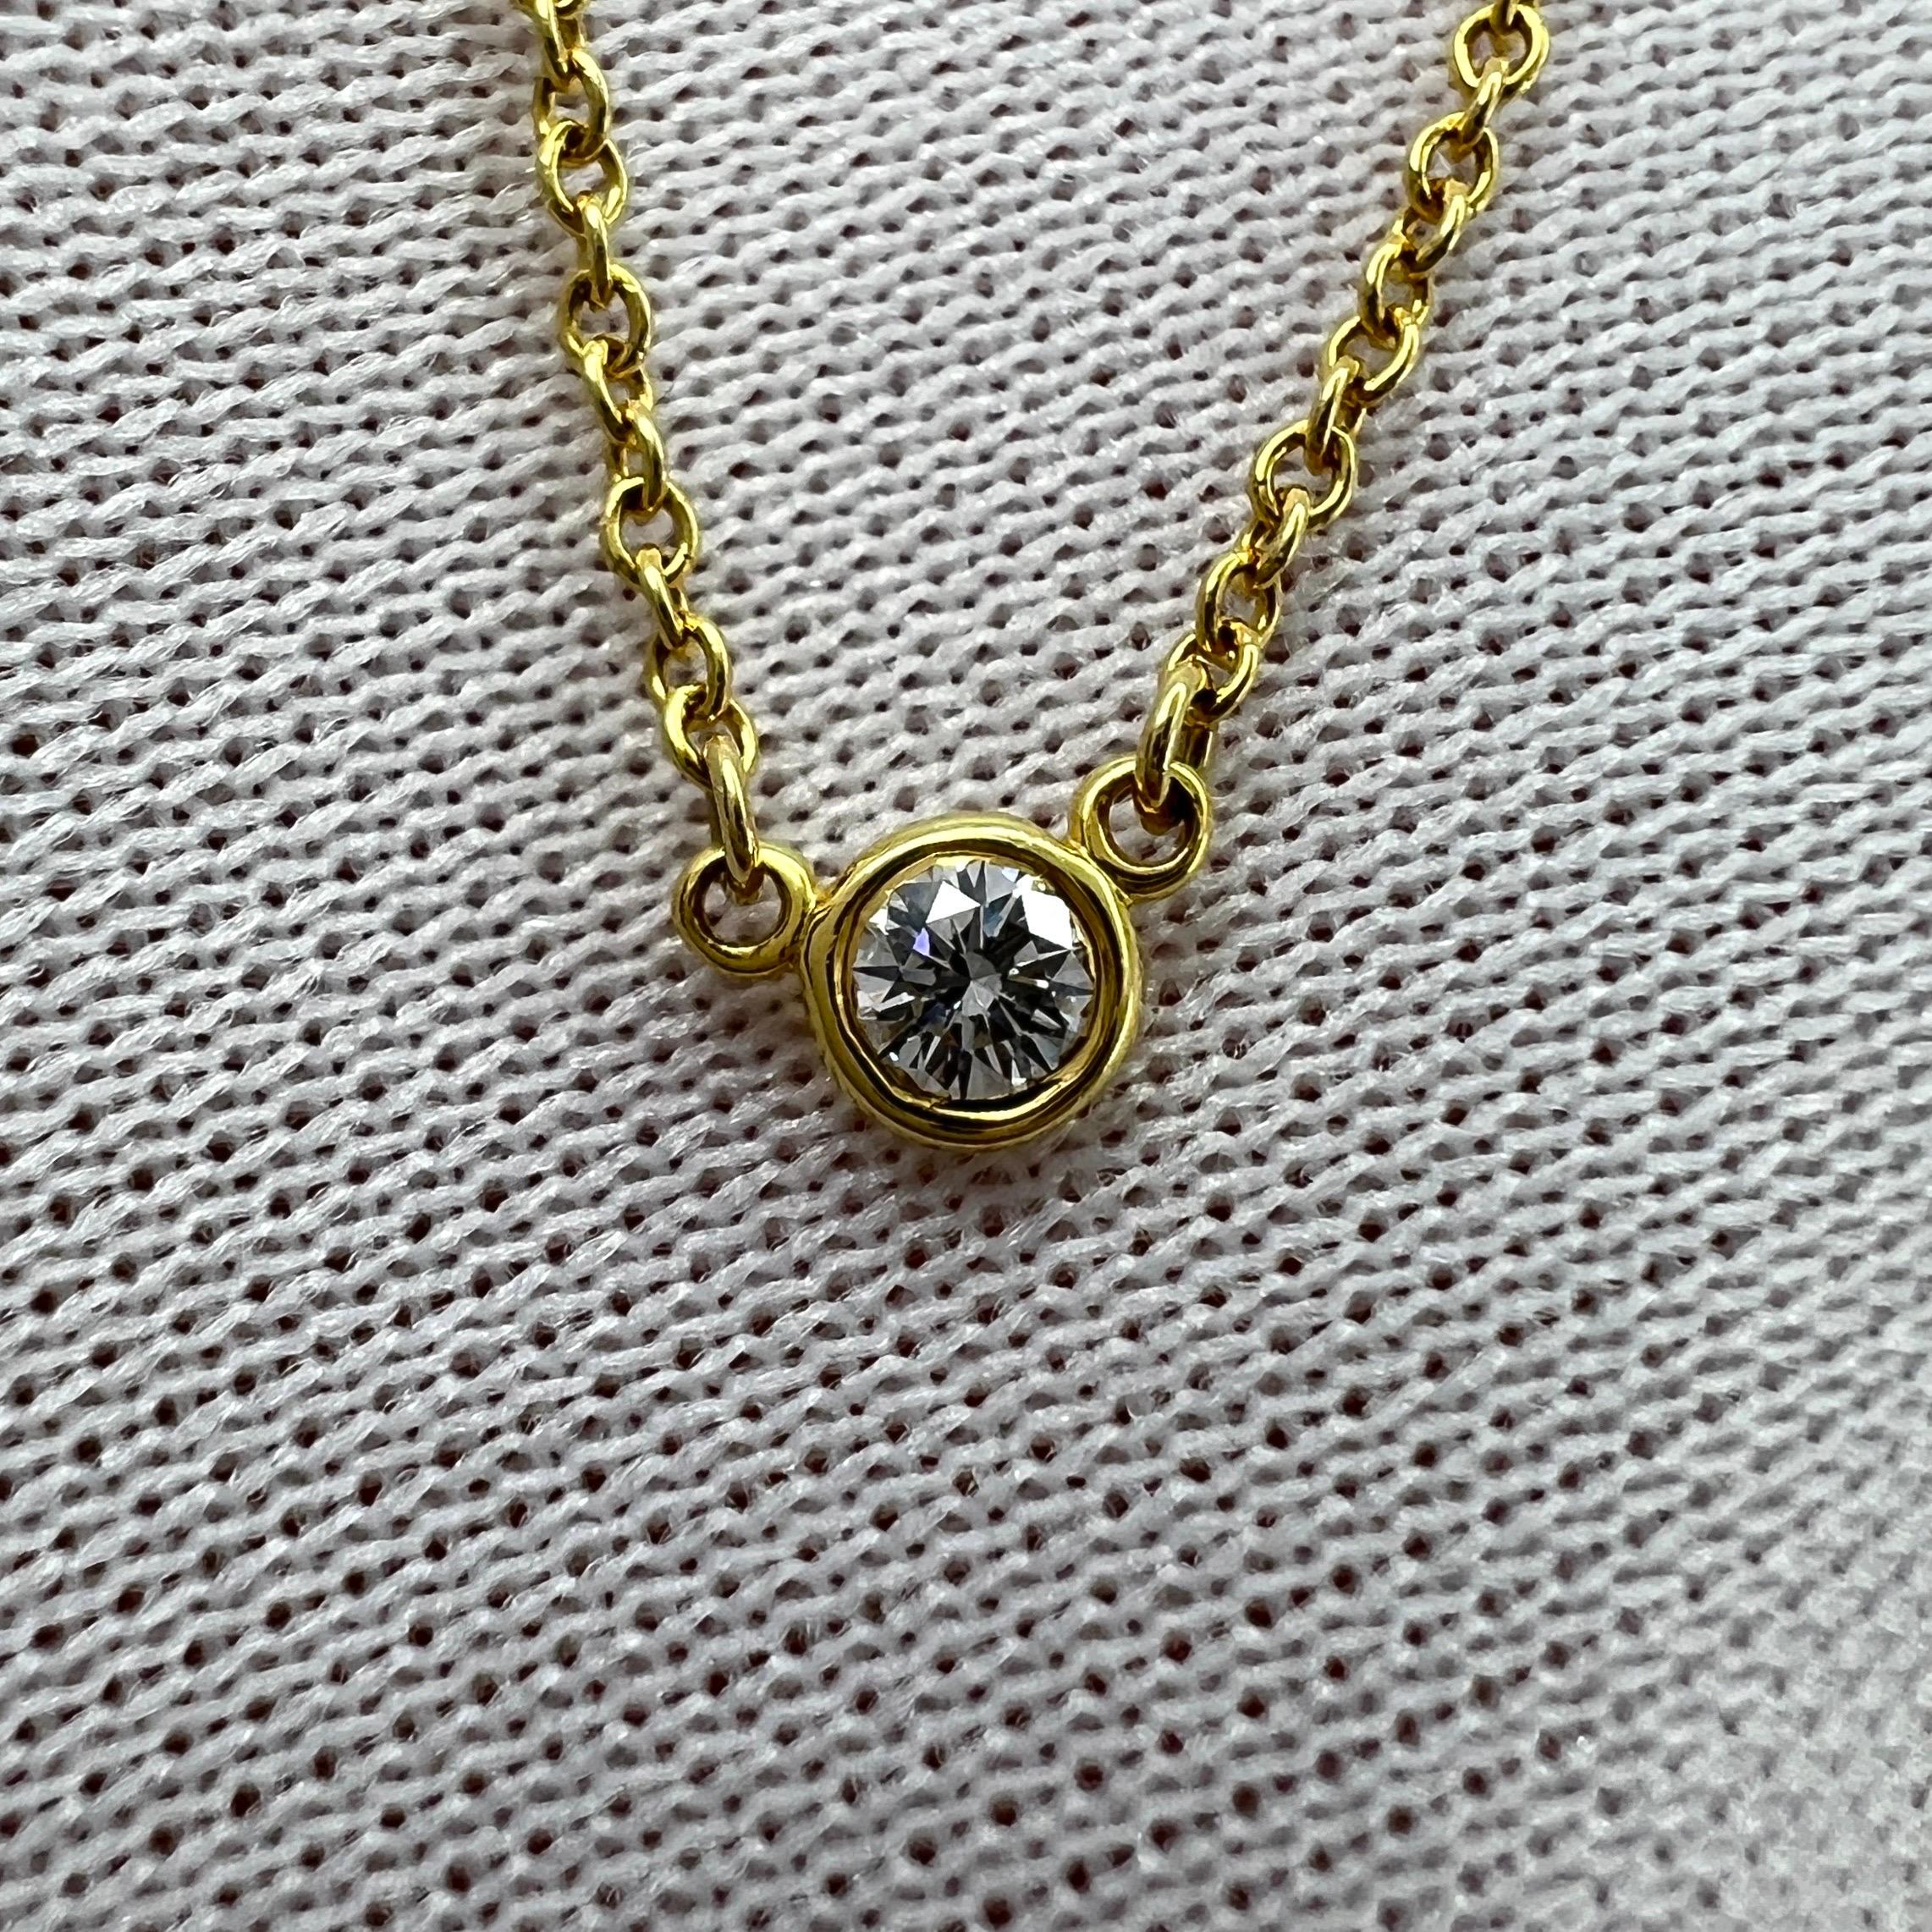 Weinlese Tiffany & Co. Elsa Peretti By The Yard Runde Diamant 18k Gelbgold Halskette.

Eine wunderschöne Halskette mit Anhänger aus 18 Karat Gelbgold, besetzt mit einem atemberaubenden runden weißen Diamanten von 3,5 mm.
Eine subtile und zierliche